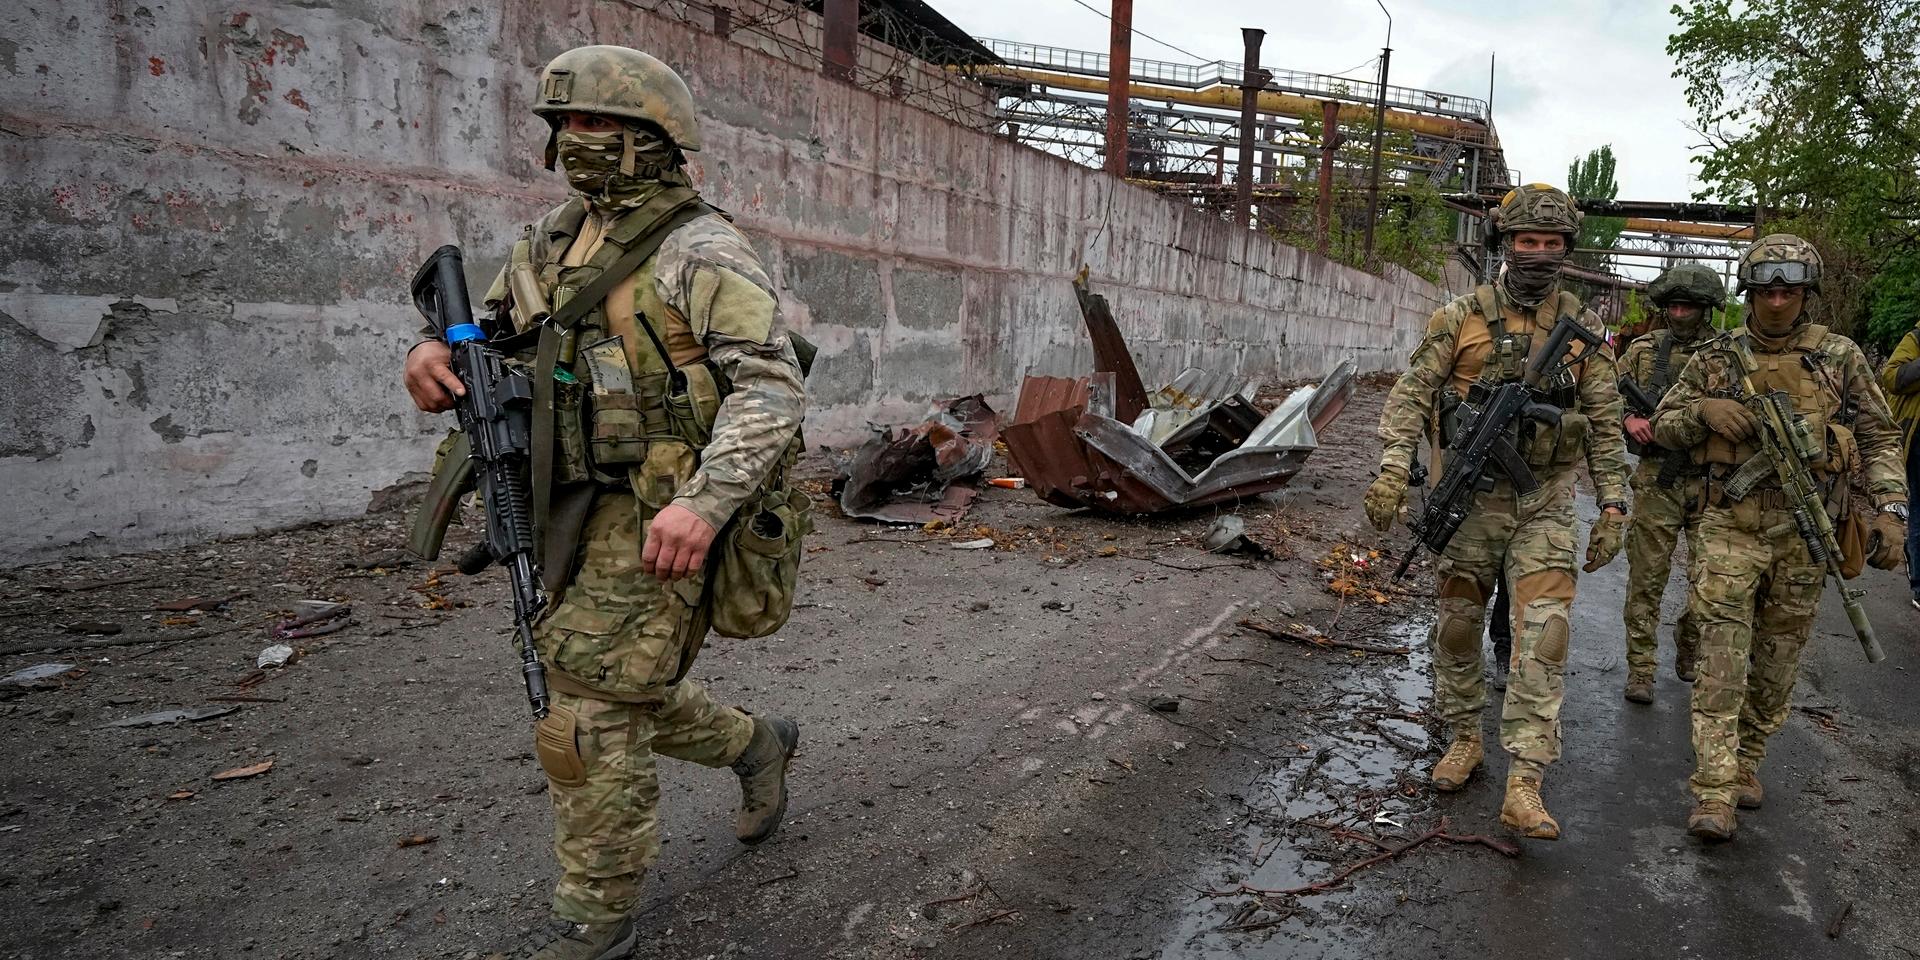 Lång tjänstgöring och brist på utbildning, stöd, mat och utrustning drar ner moralen hos de ryska soldaterna som slåss i Ukraina. 